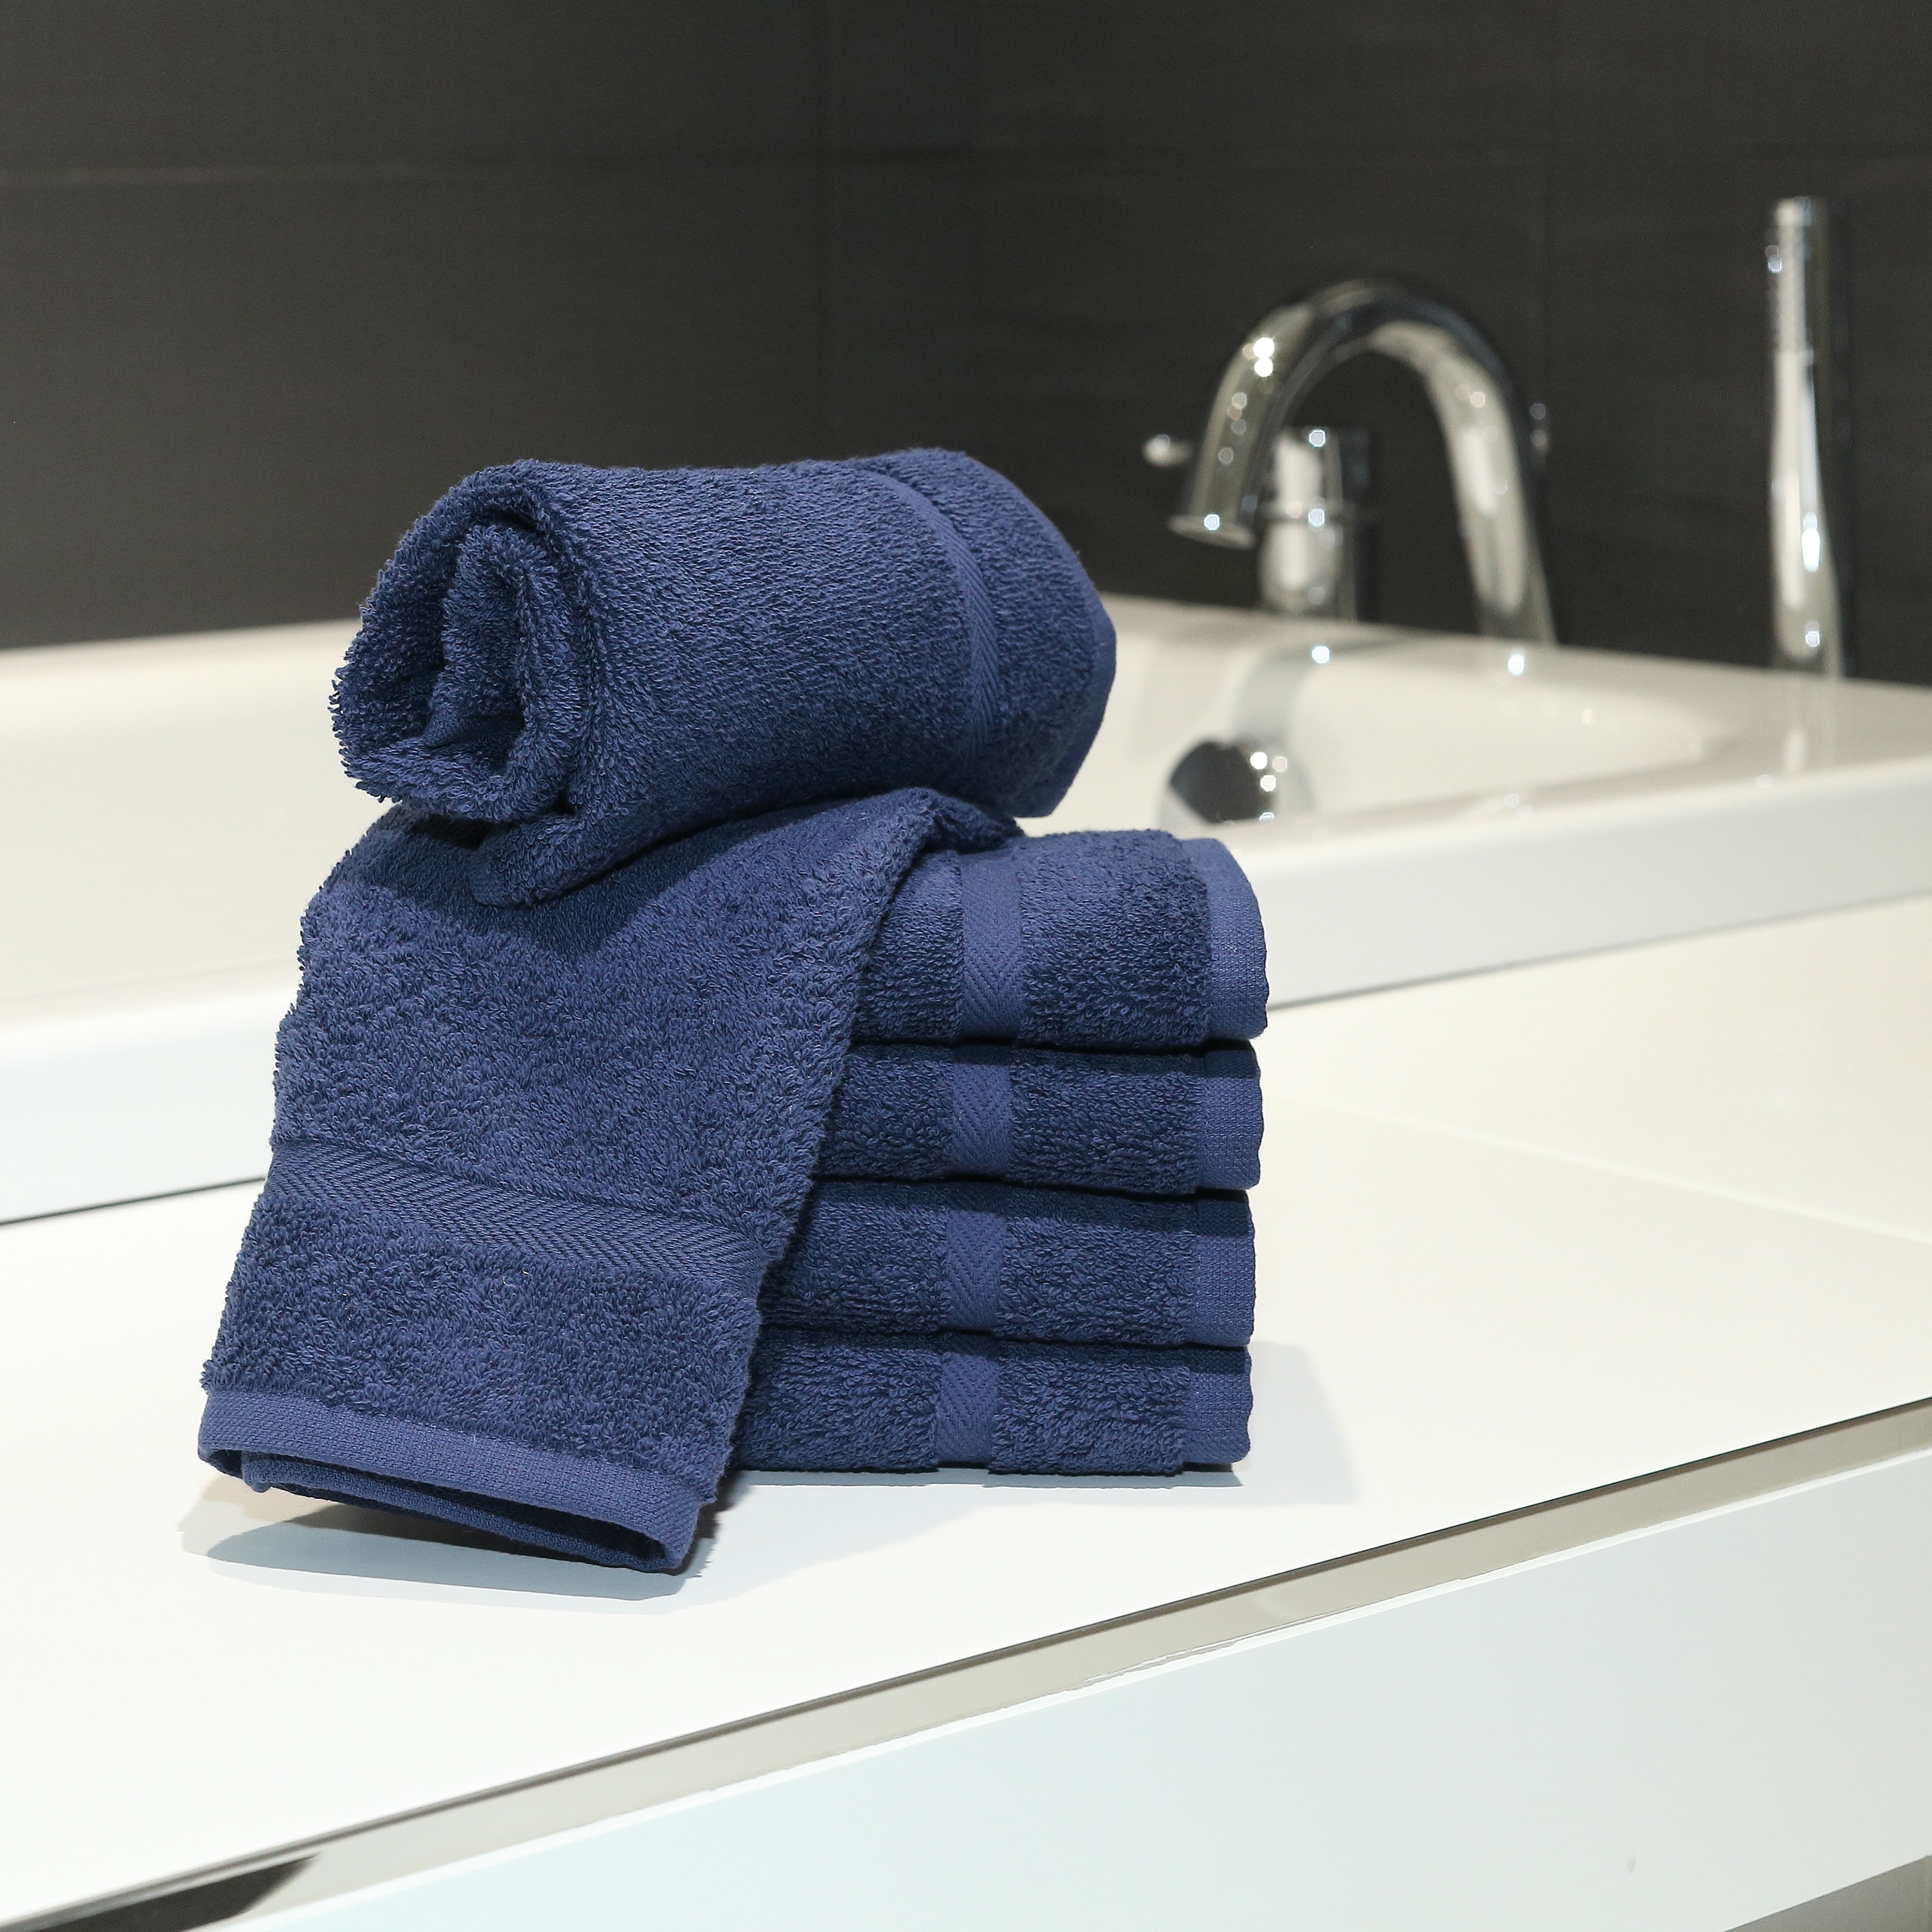 ceoberry %100 Cotton 6 Piece Bath Towels Set - Towels for Bathroom -  Turkish Bath Towels - Luxury Bath Towels, Bath Sheets Towels for Adults,  Towels